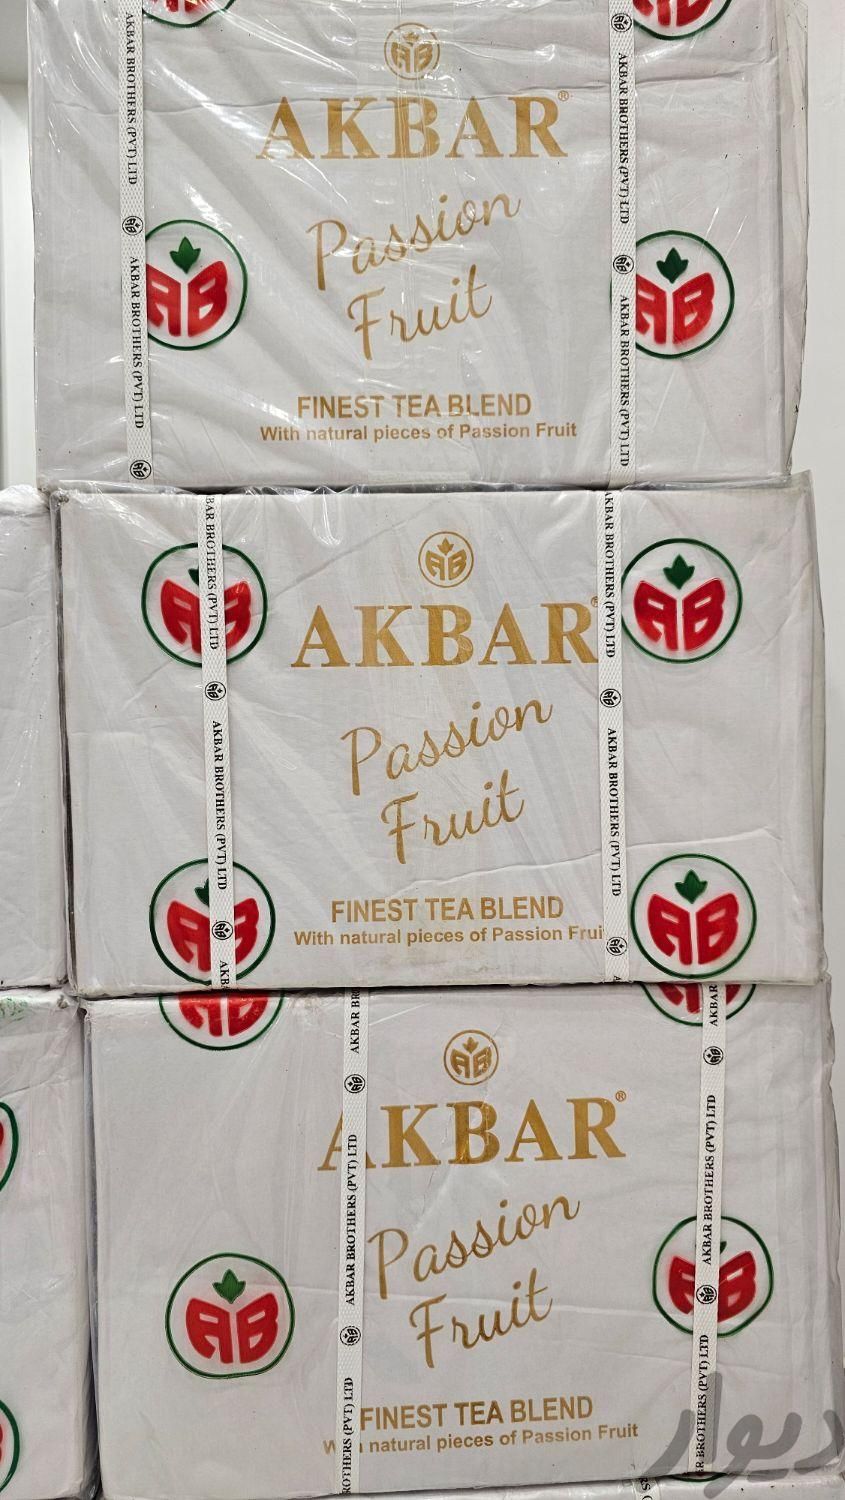 شاه چای مراکشی برند akbar اکبر سریلانکا اصلی|خوردنی و آشامیدنی|تهران, پونک|دیوار